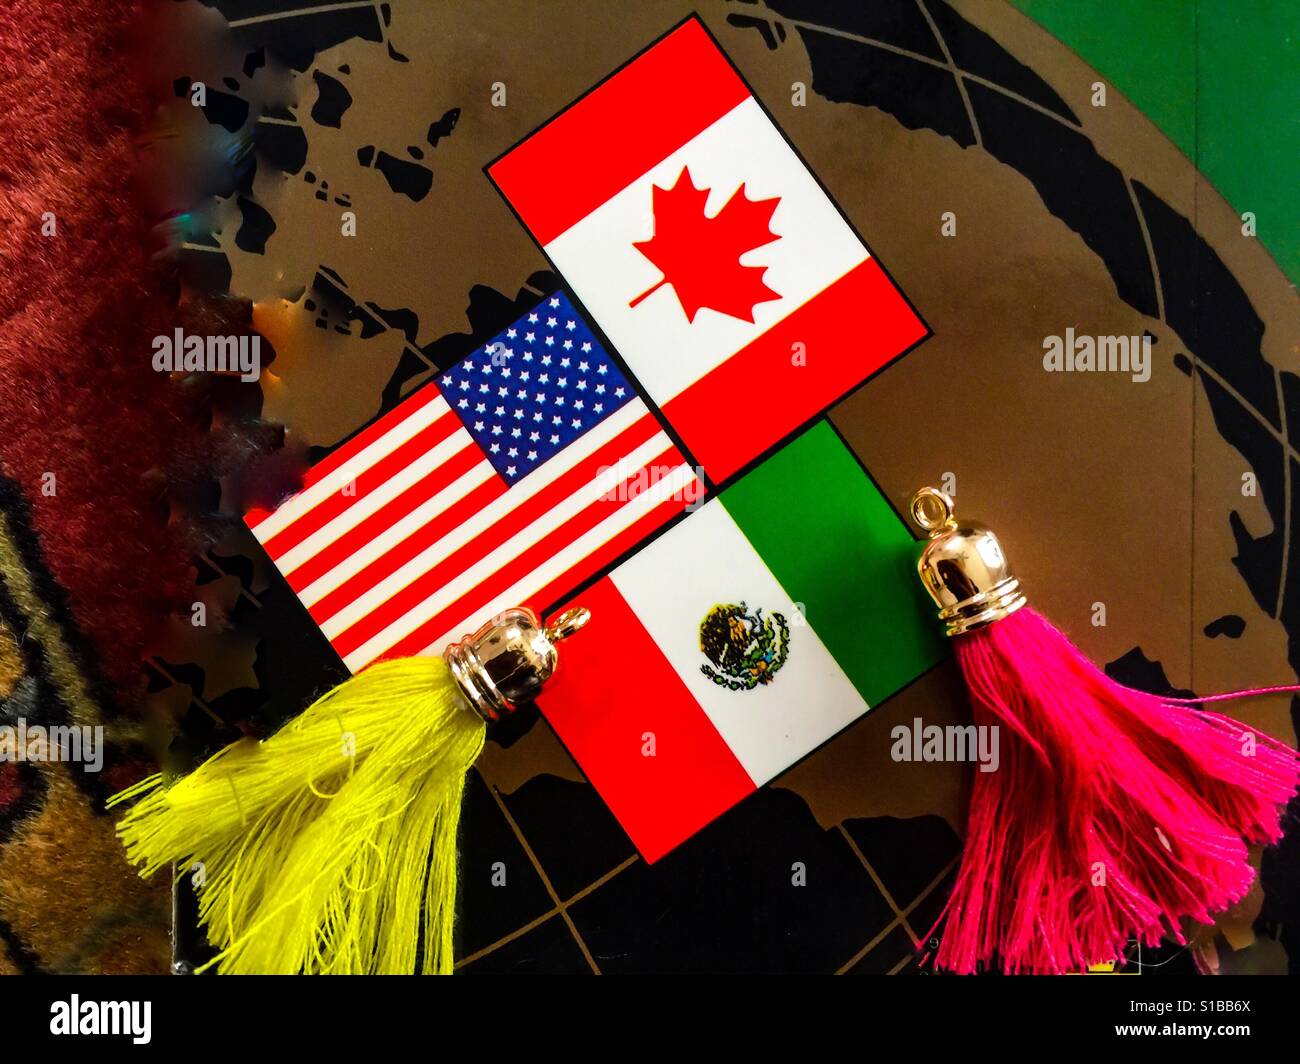 Die Welt der NAFTA, USMCA jetzt, drei Länder drei Flaggen in einer ikonischen Anordnung. Das Maple Leaf, die Stars and Stripes und die mexikanische Flagge wurden harmonisch arrangiert. Keine Zwietracht oder Reibung. Stockfoto